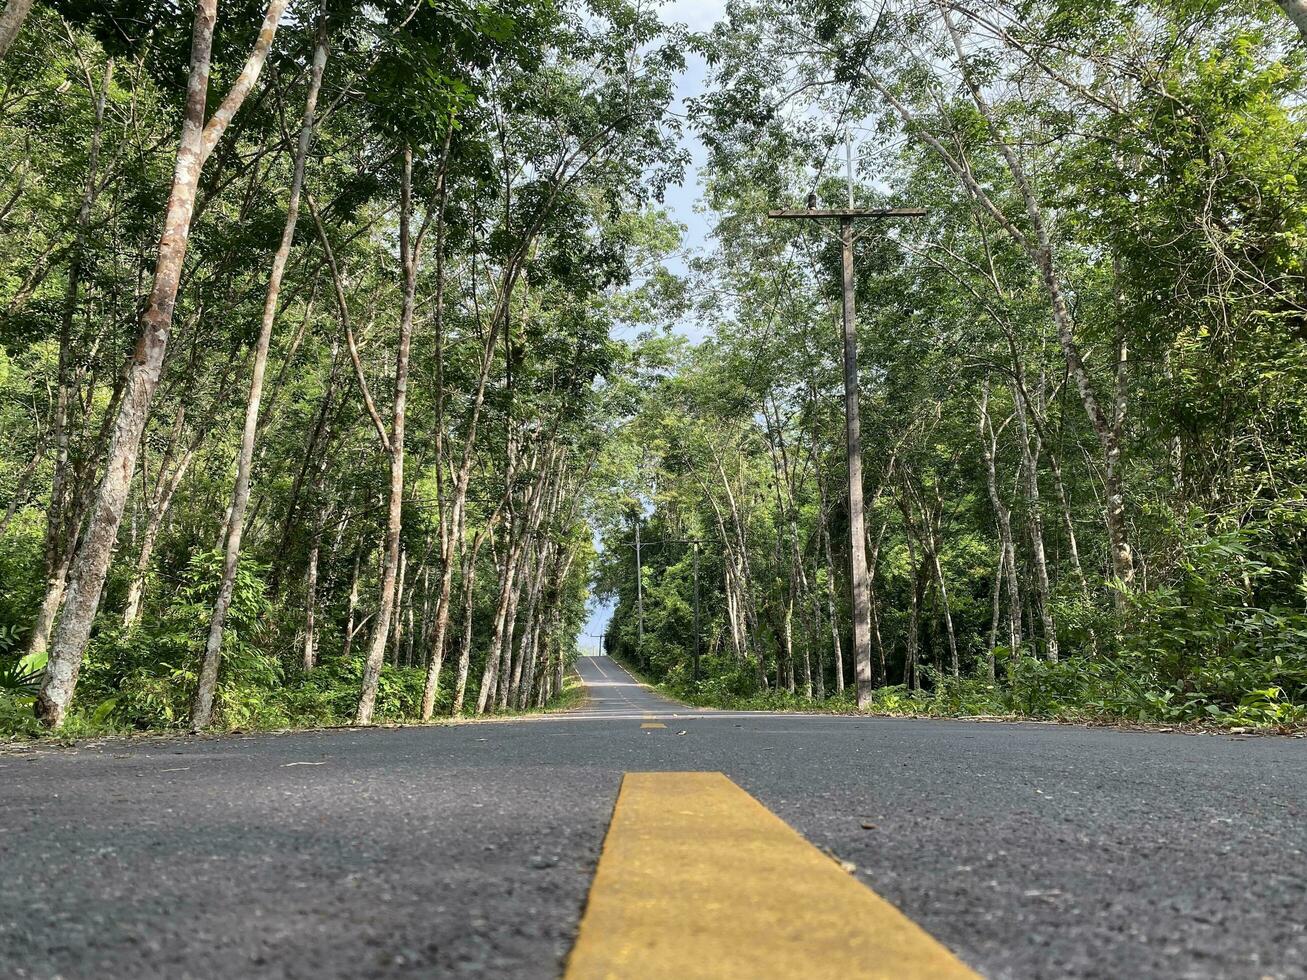 route asphalte dans le forêt la nature campagne de Thaïlande, route environnement haute Tension électrique pol. arbre jungle Voyage vert paysage. route façon Autoroute concept vue périple île naturel. photo